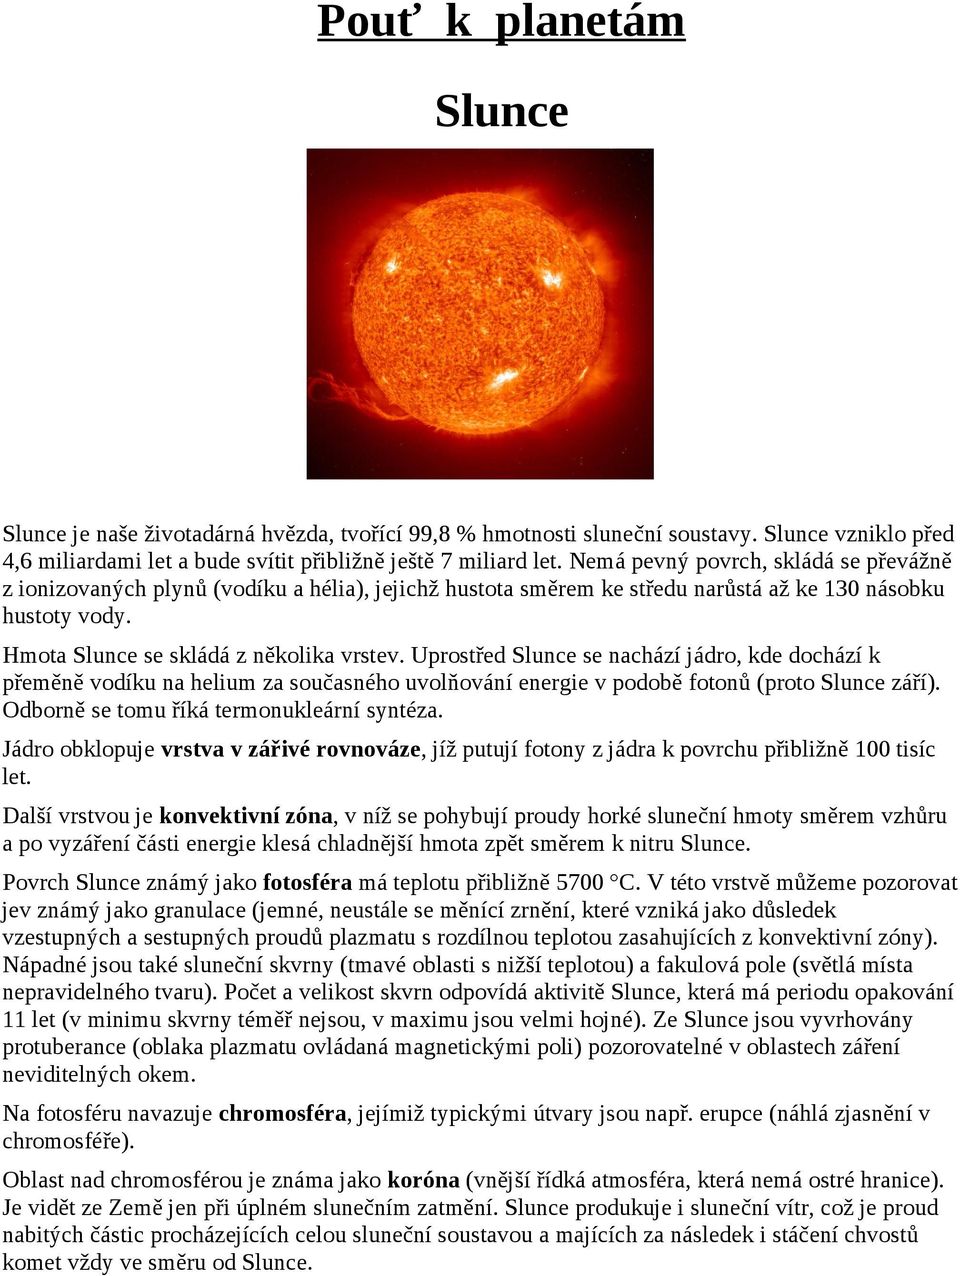 Uprostřed Slunce se nachází jádro, kde dochází k přeměně vodíku na helium za současného uvolňování energie v podobě fotonů (proto Slunce září). Odborně se tomu říká termonukleární syntéza.